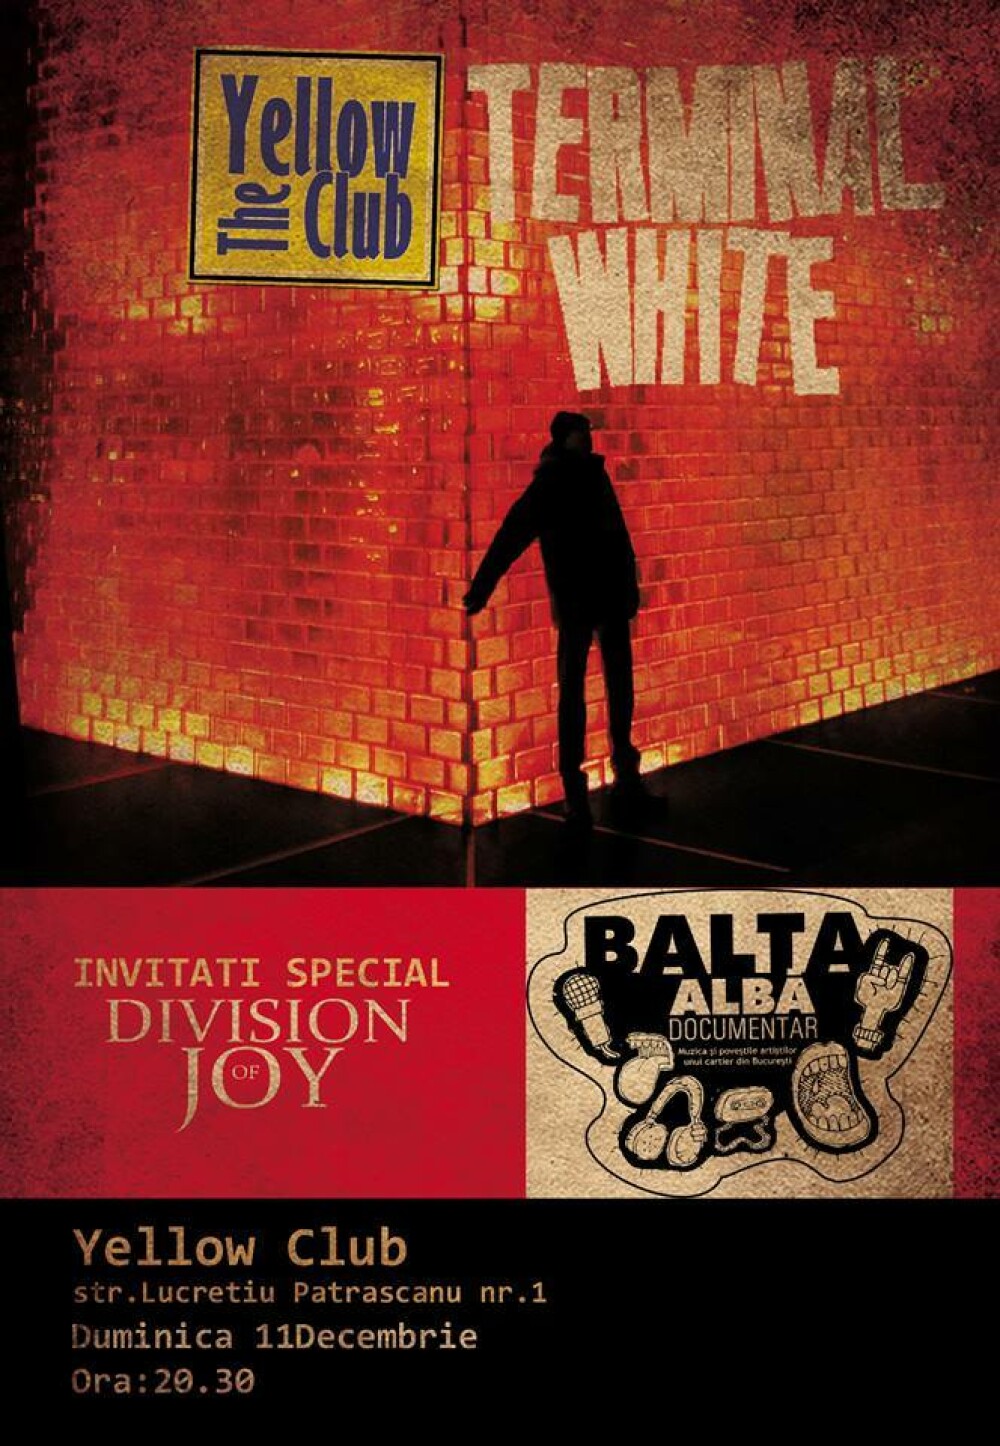 Concertele Terminal White au fost anulate. Raman valabile proiectia documentarului Balta Alba si concertul Division of Joy - Imaginea 3